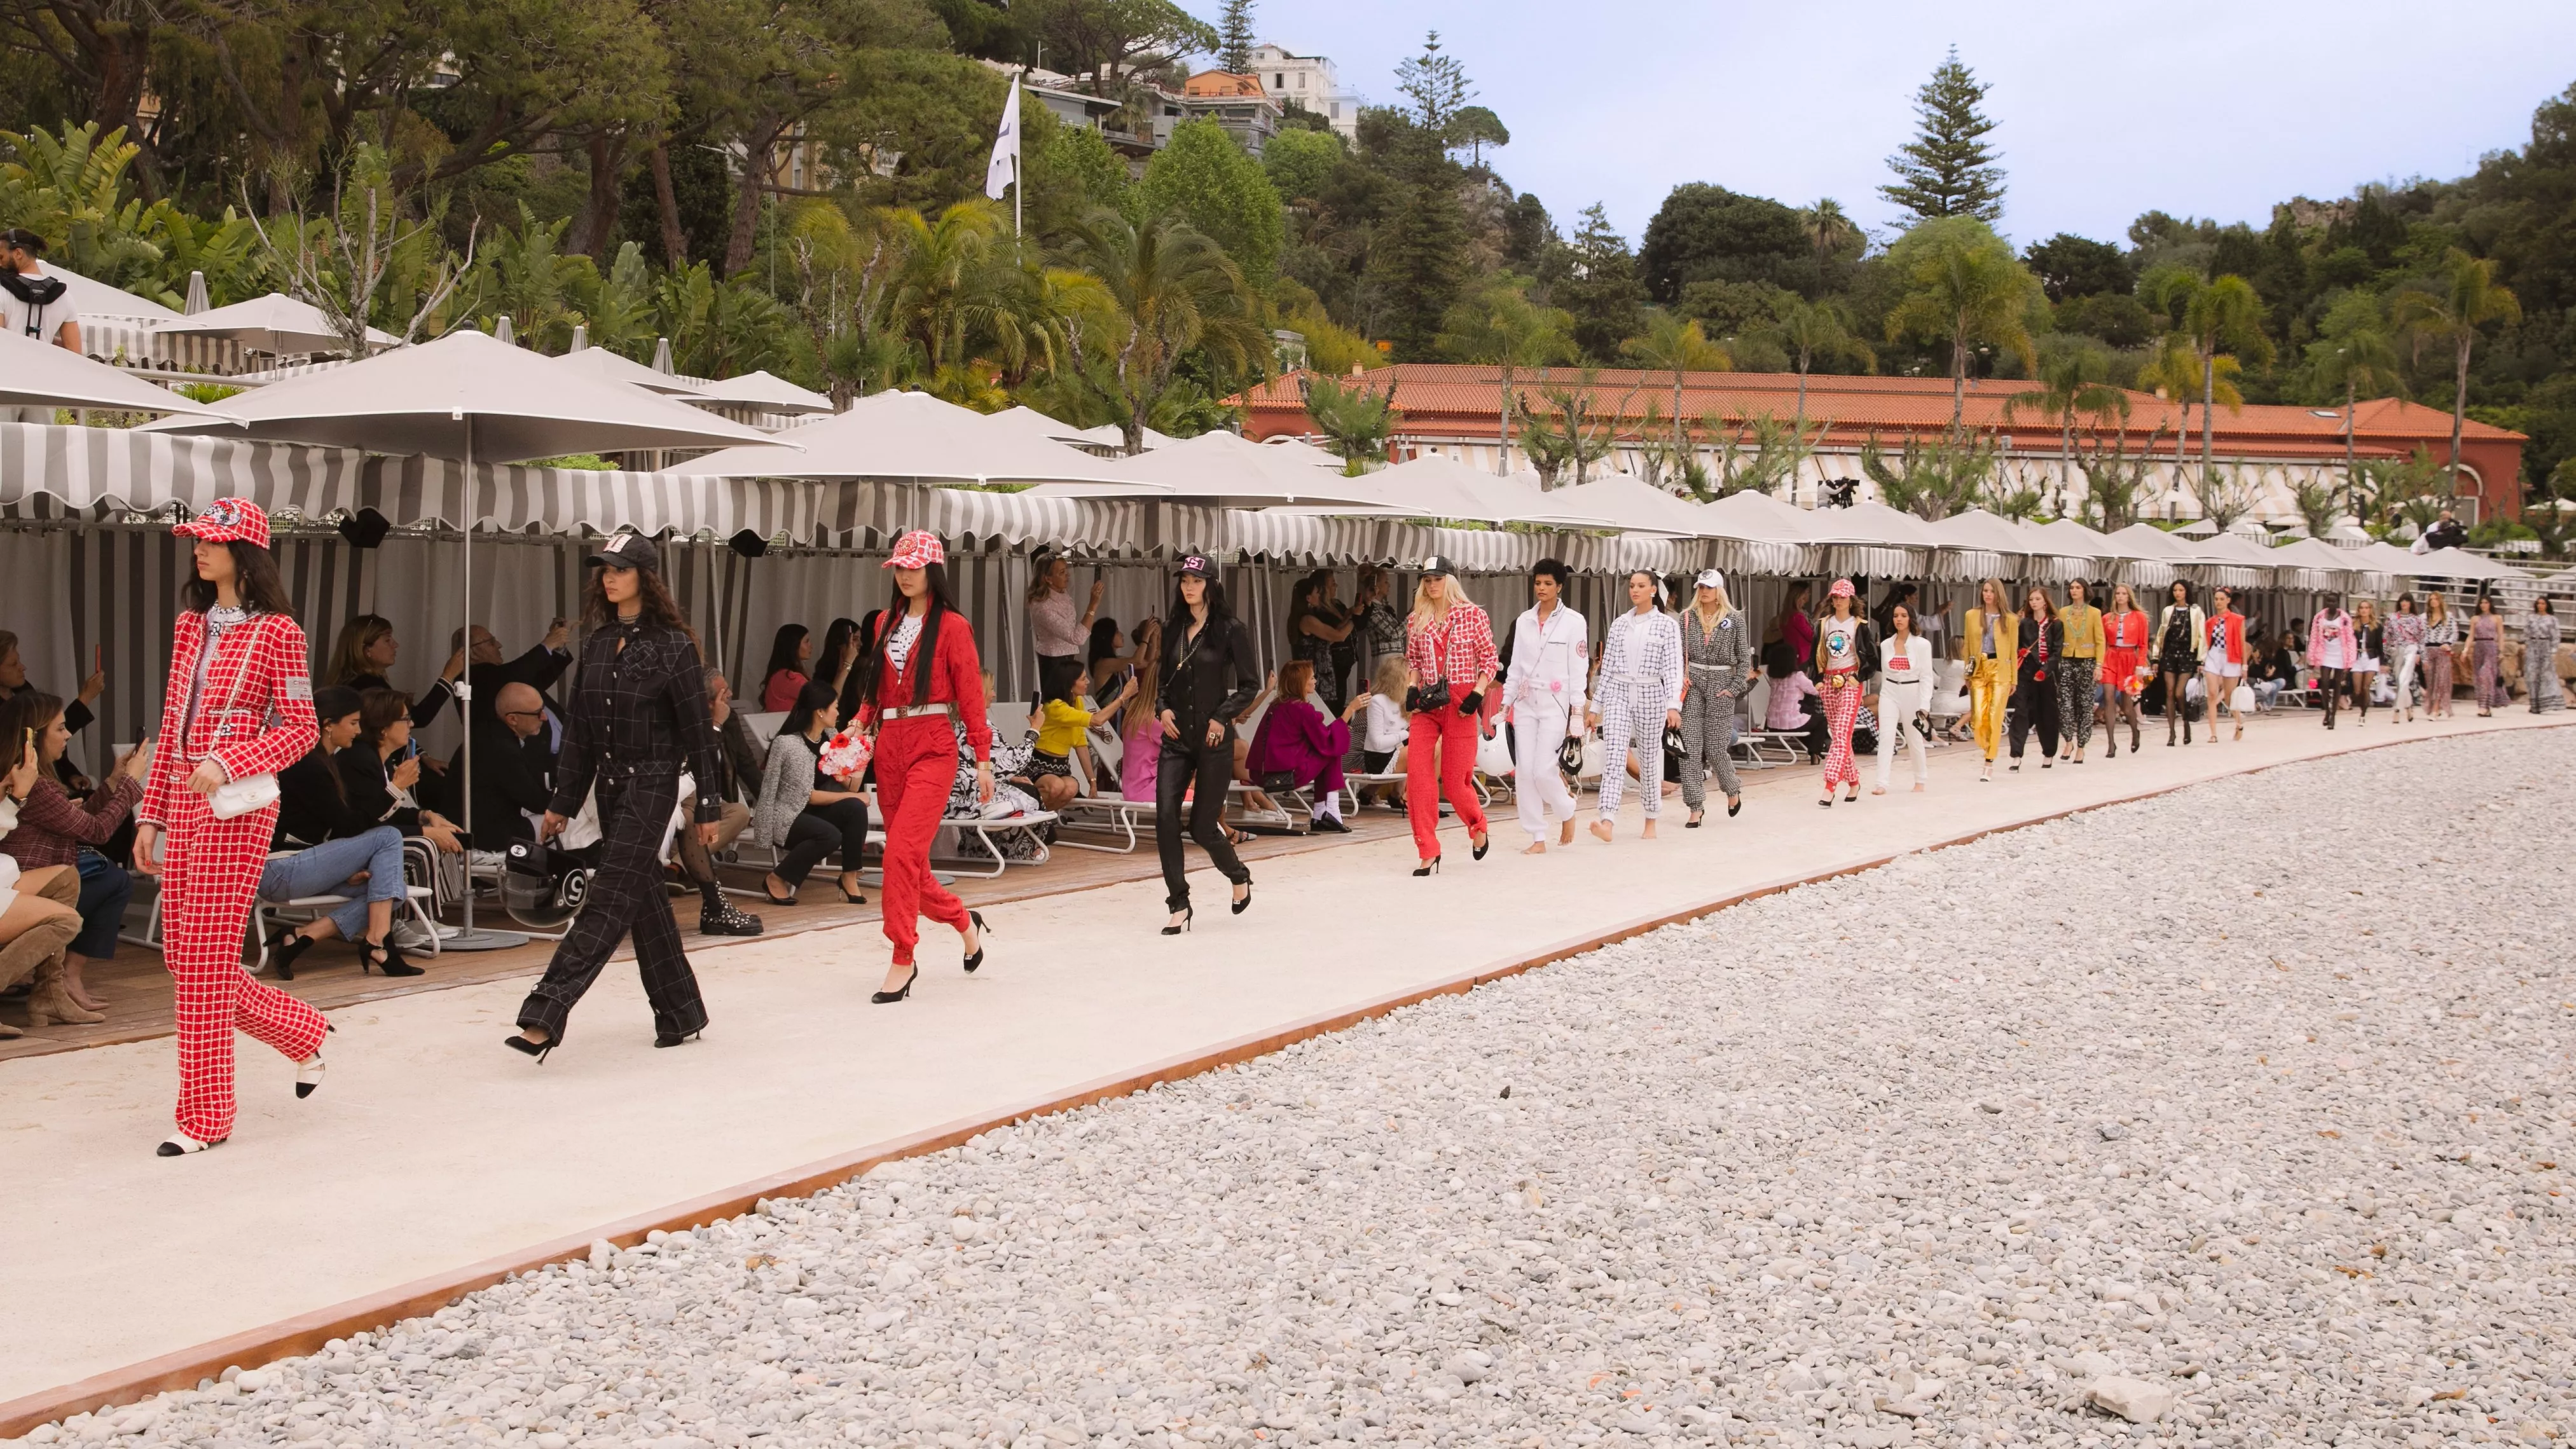 من مونتي كارلو وأجواء الشاطئ الساحرة، Chanel تقدّم المجموعة التحضيرية لربيع 2023